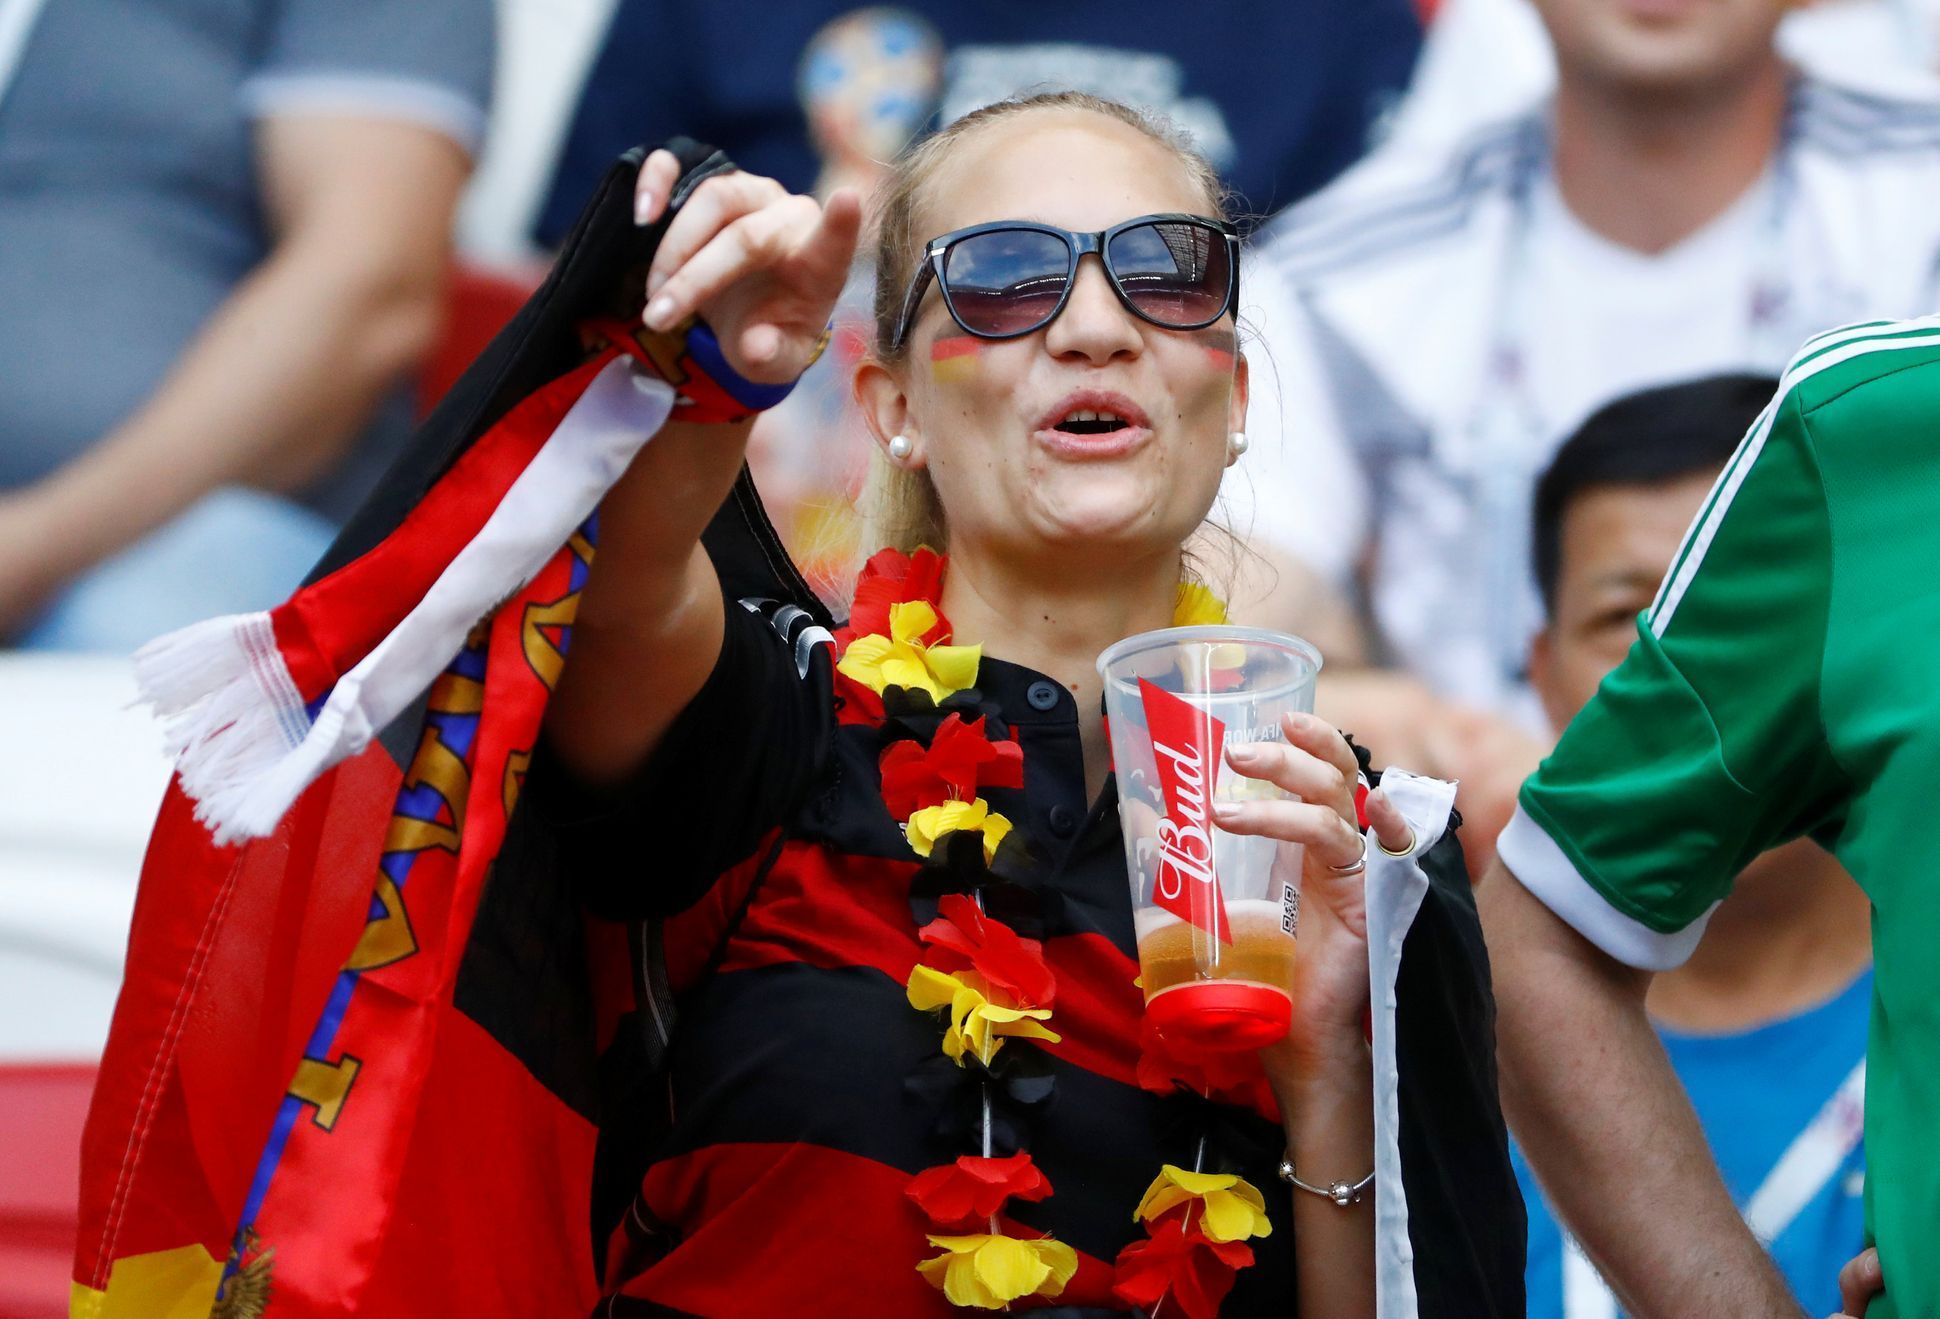 Německo - Korea na MS 2018: Němečtí fanoušci před zápasem